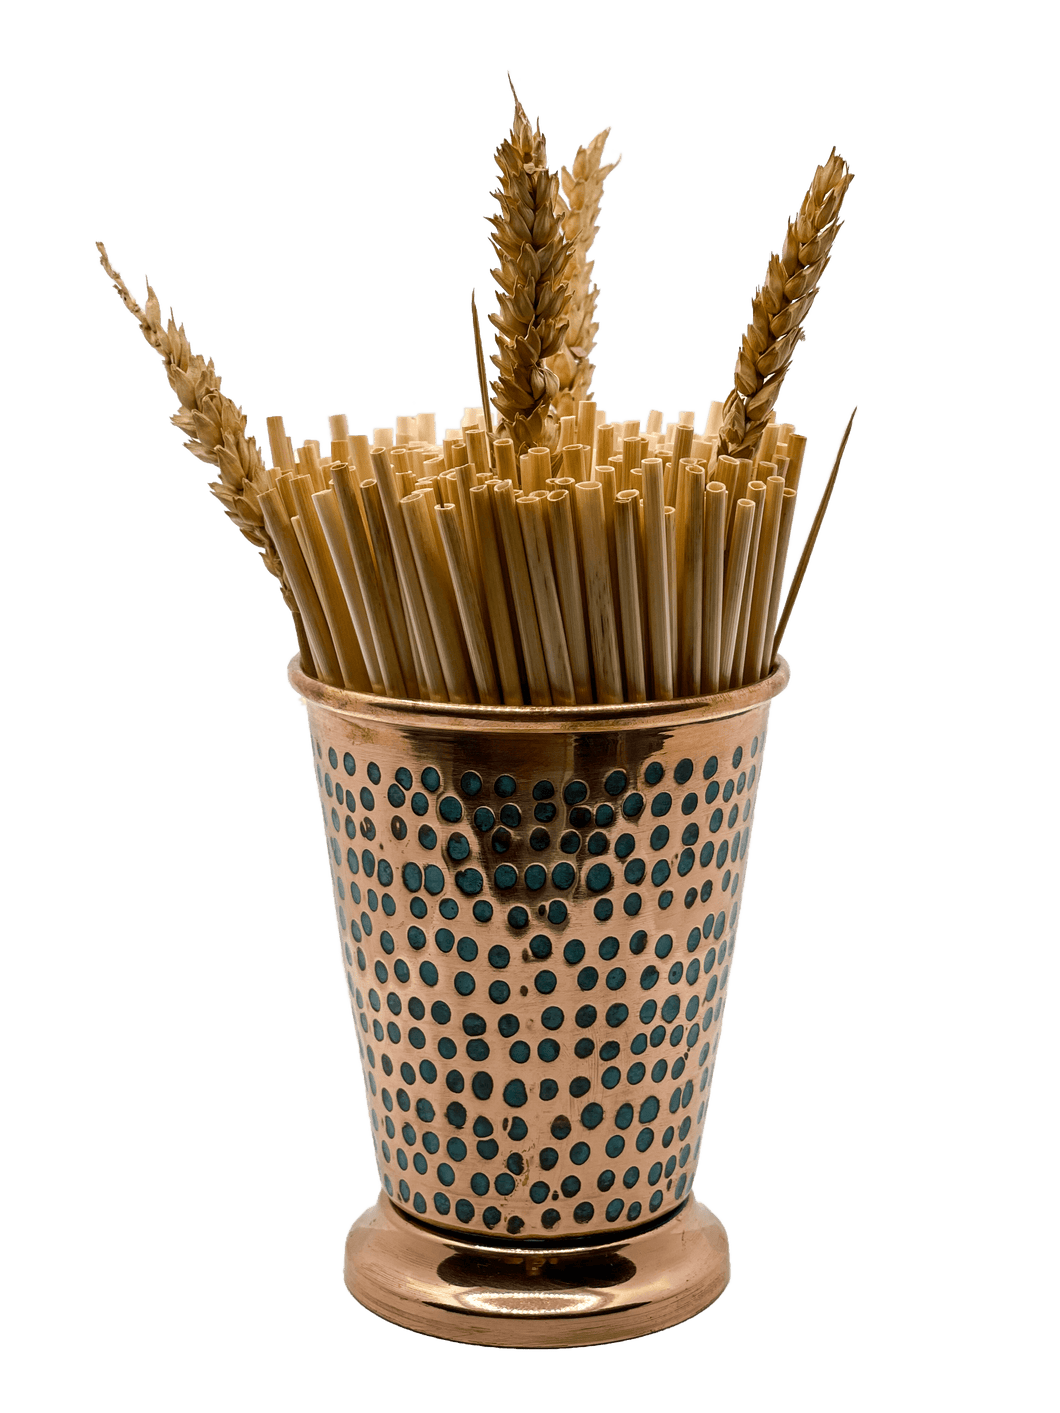 Pailles de blé bio et biodégradables collection Zero